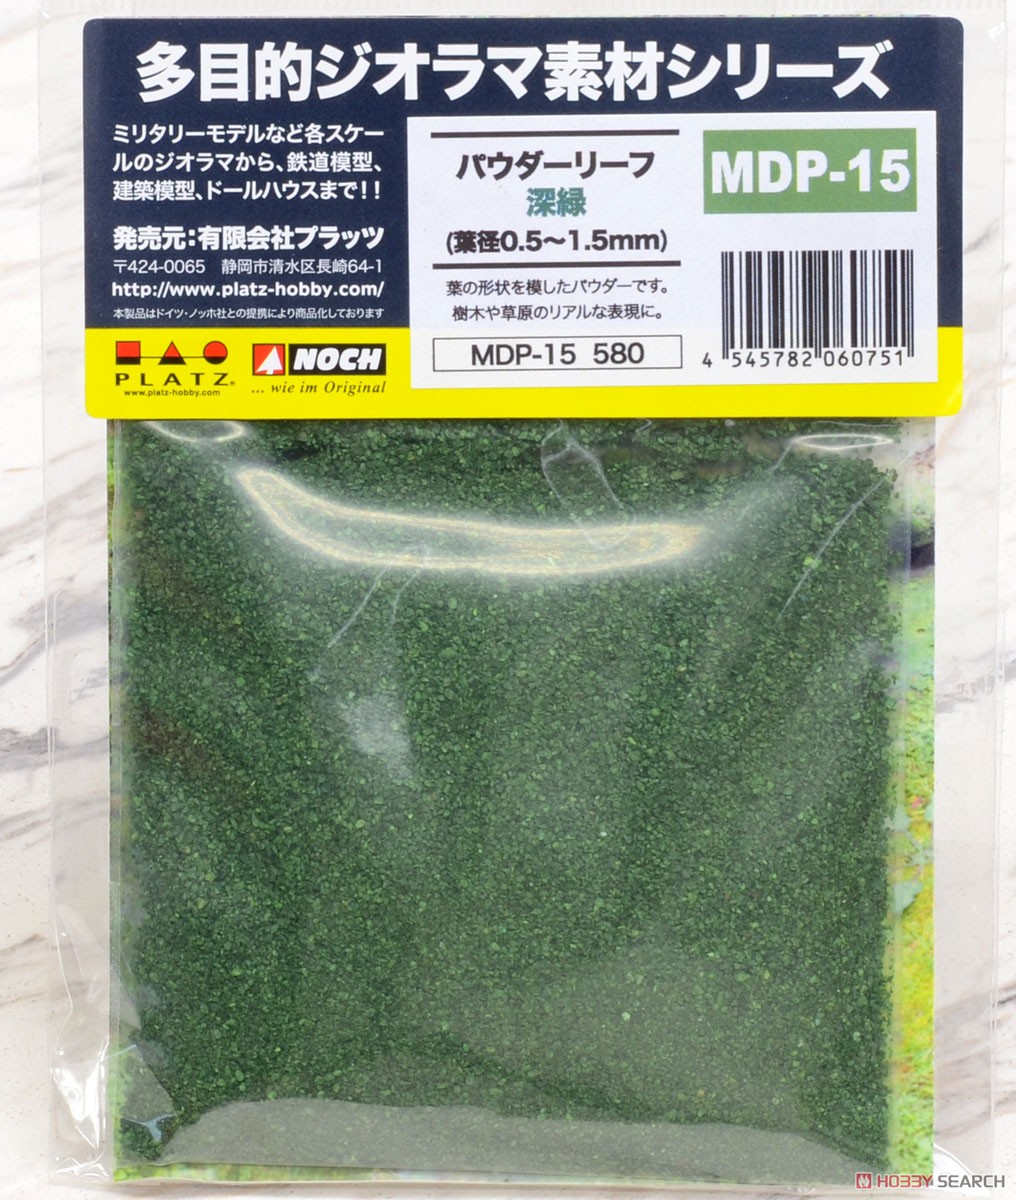 パウダーリーフ・濃緑 (葉径0.5～1.5mm) (鉄道模型) パッケージ1